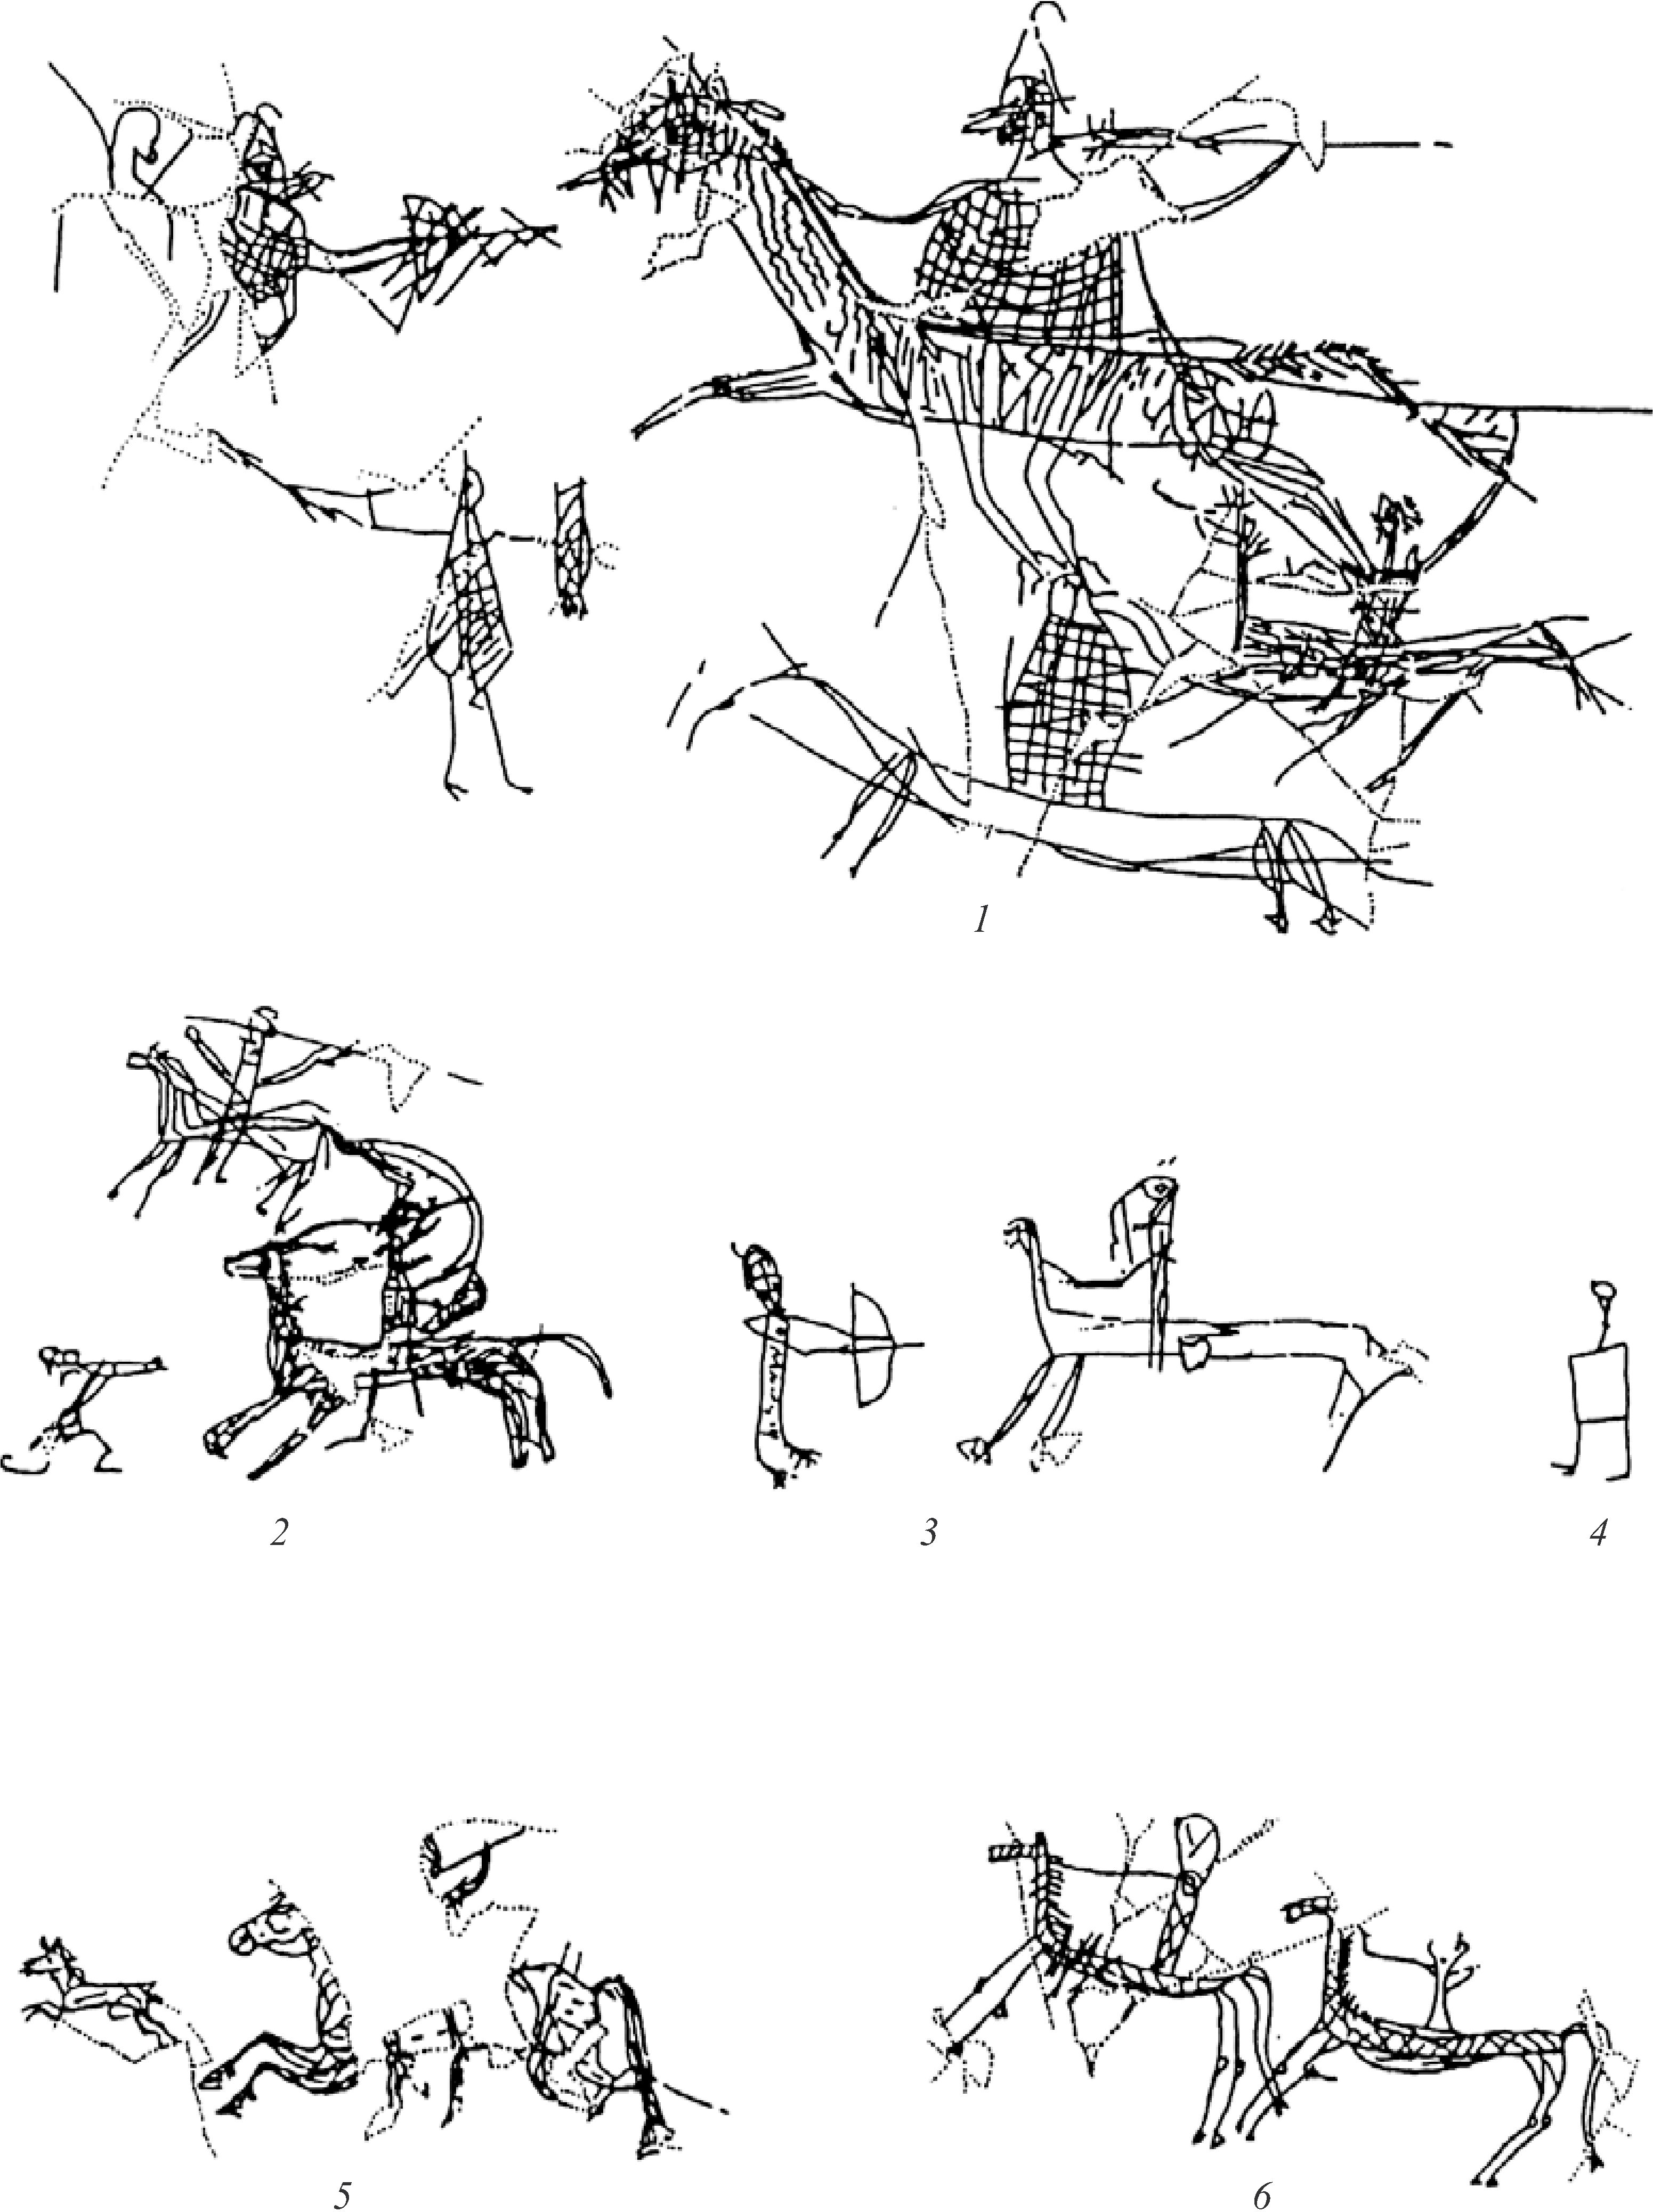 Рис. 52. Граффити с изображением батальных сцен из святилища Нимфея (по О. Хёкманну)